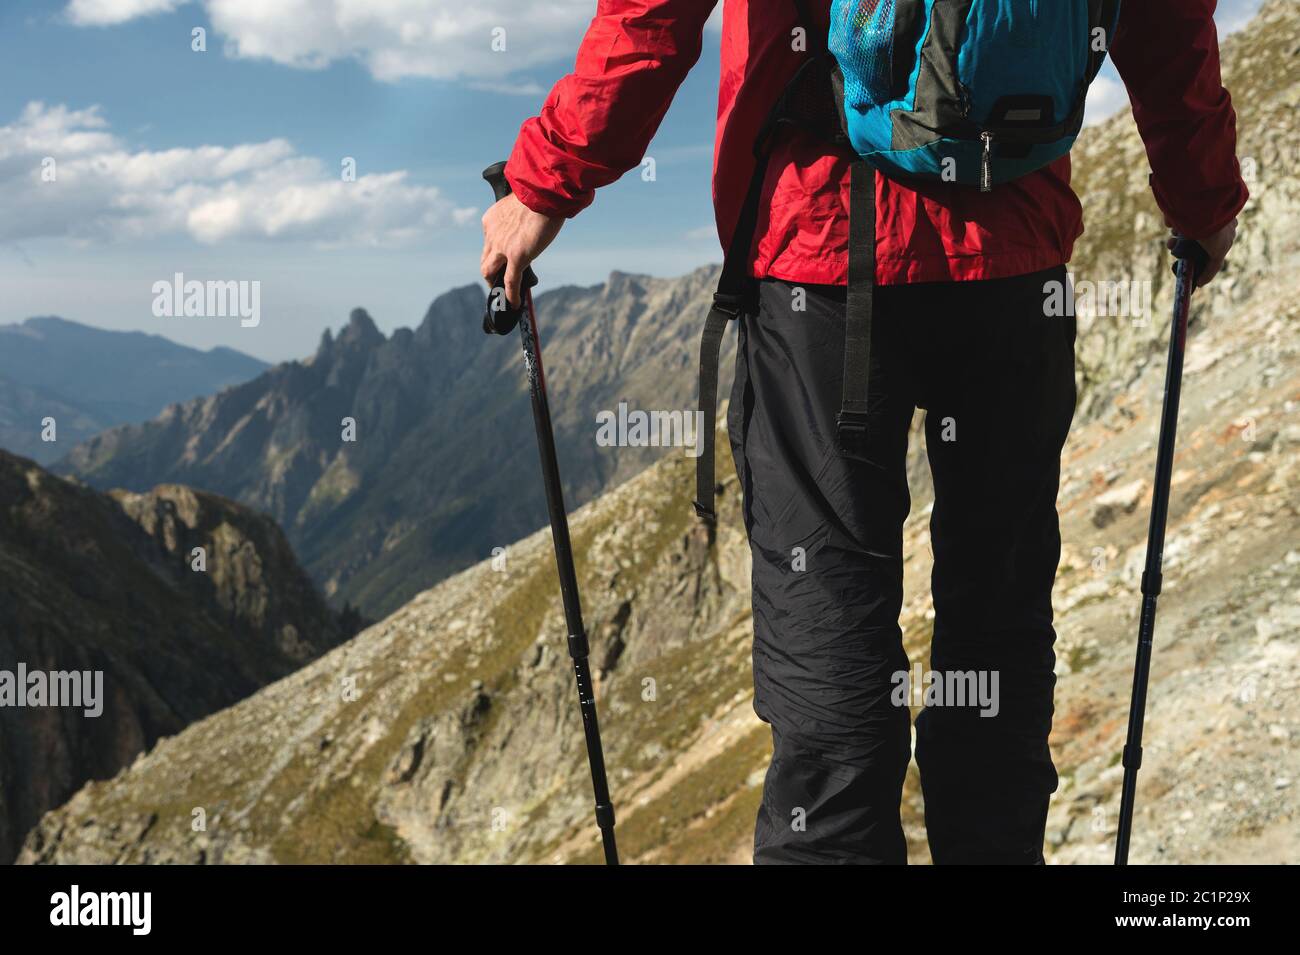 Der Körper des Menschen mit einem Rucksack und Trekking-Stöcke steht auf einem Felsen vor dem Hintergrund felsigen Tal hoch in der Halterung Stockfoto